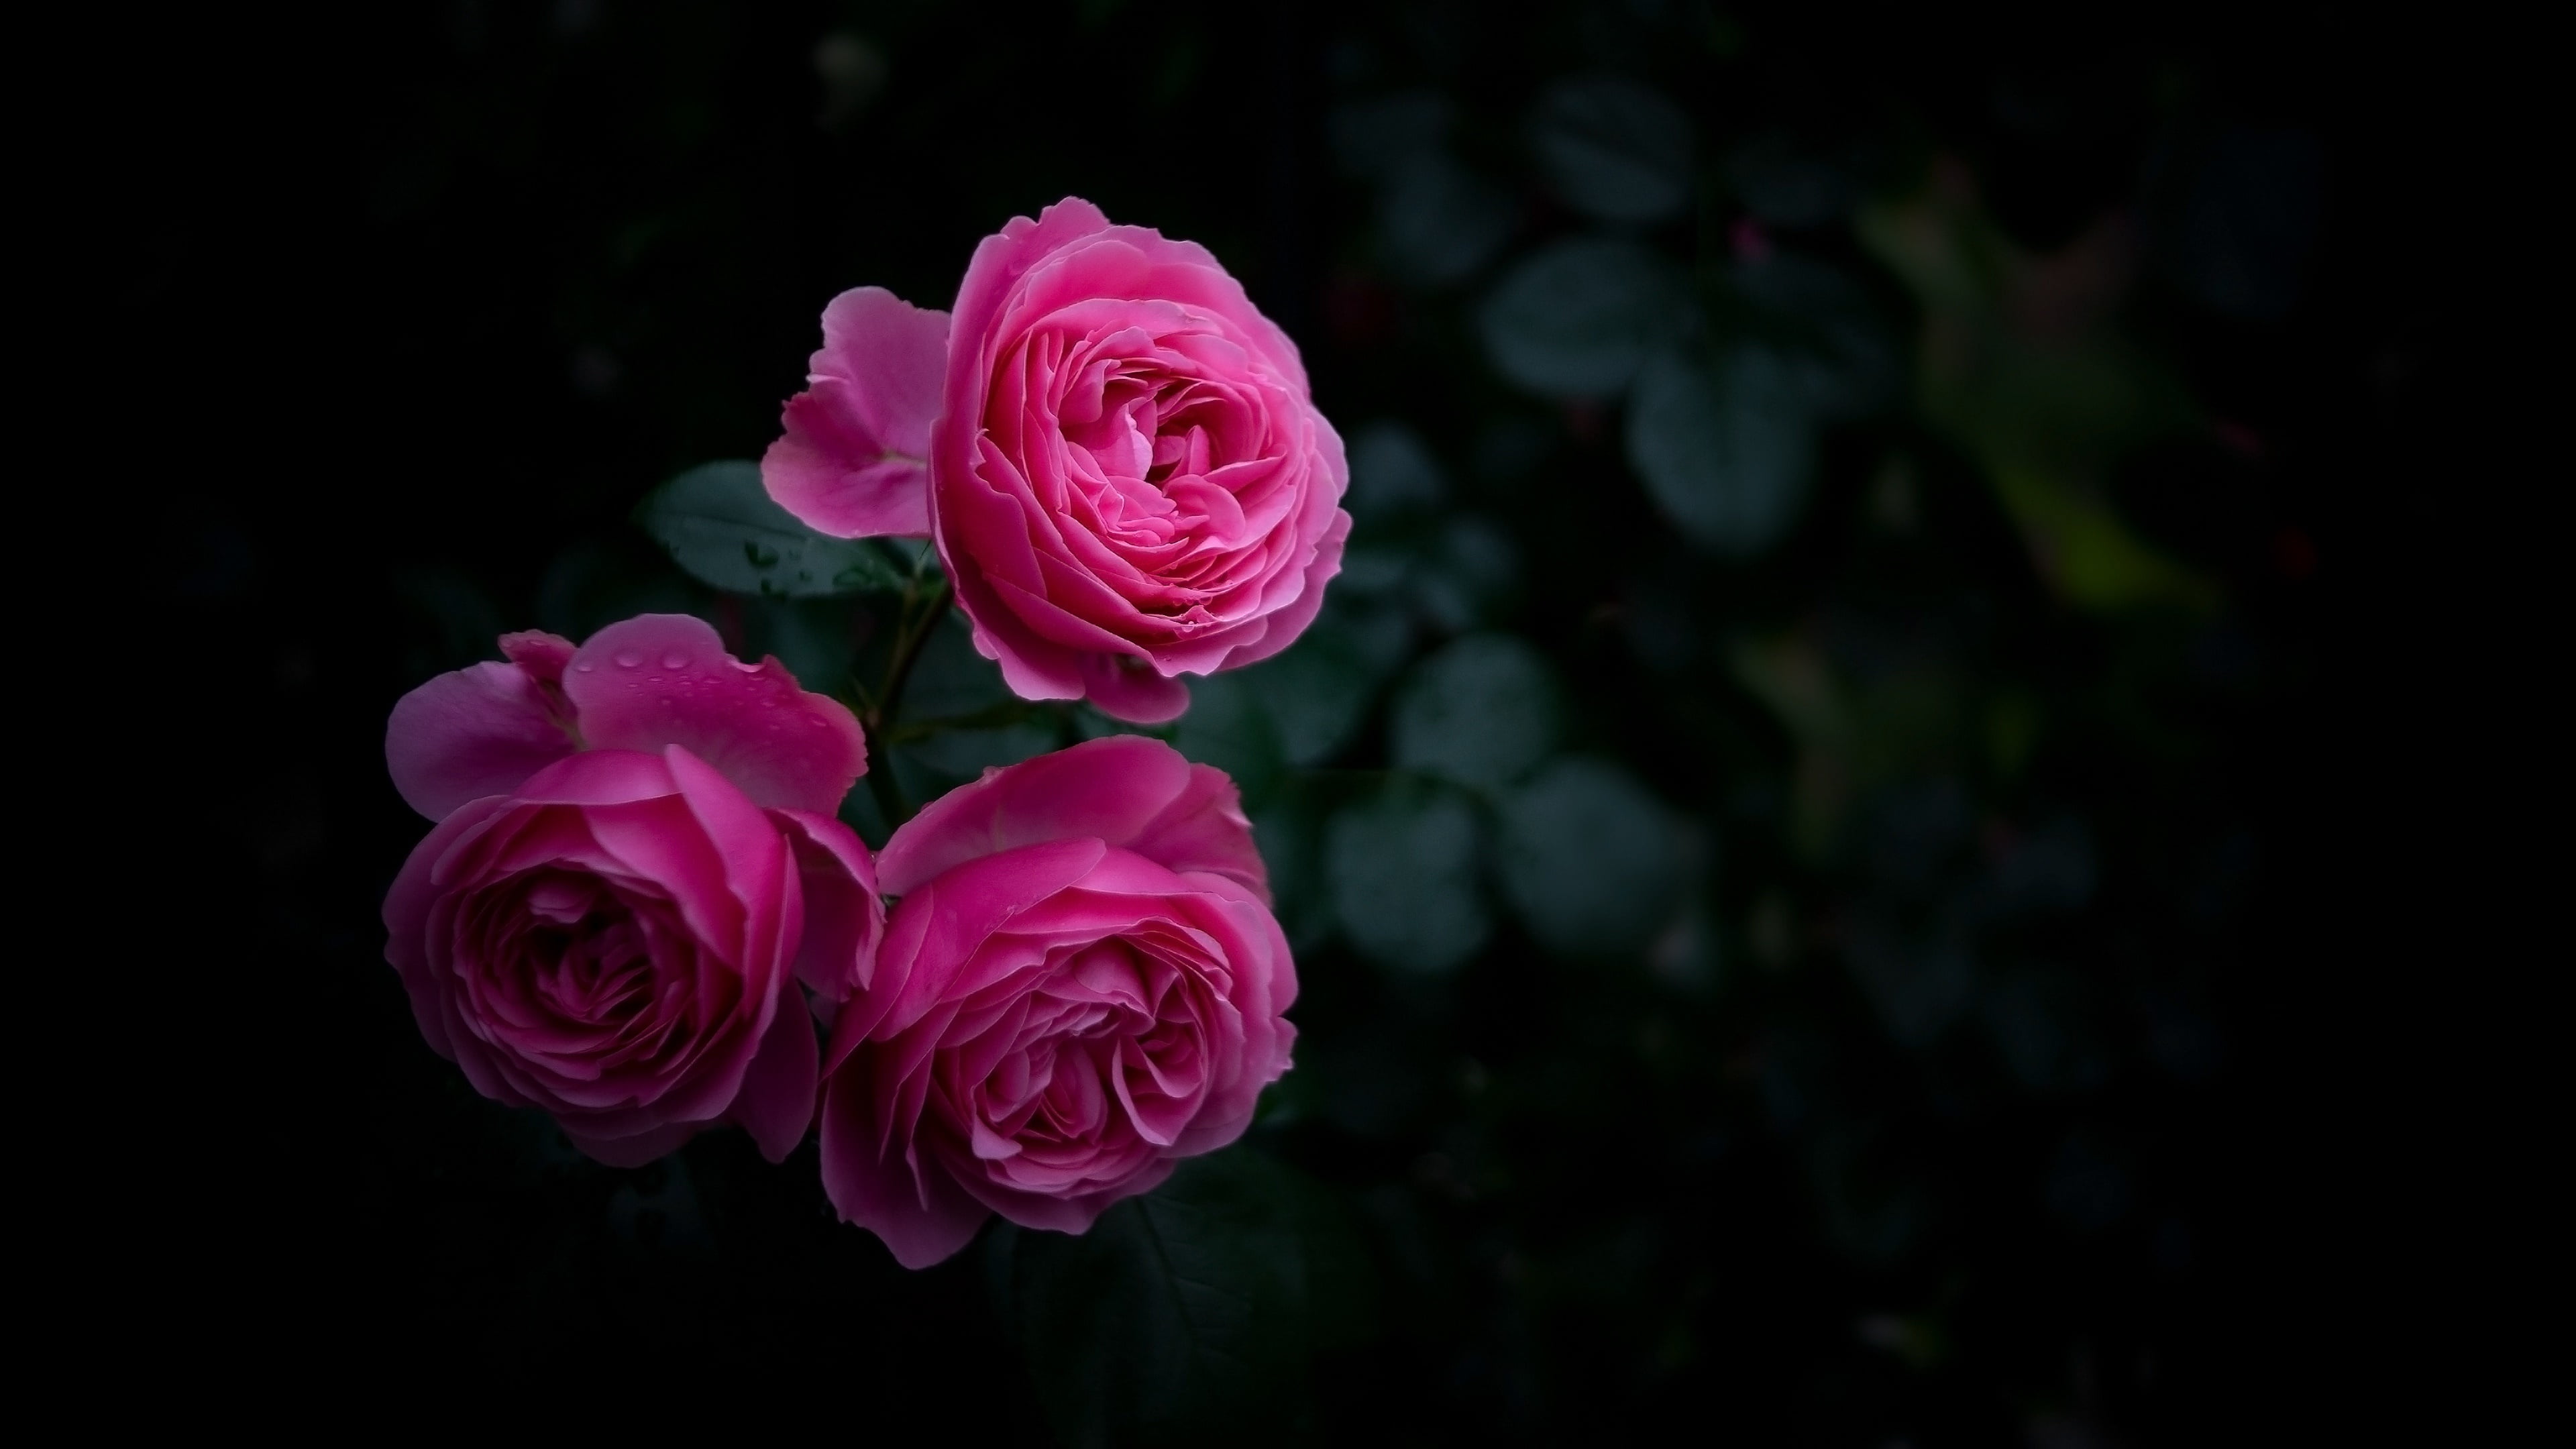 flower, rose, pink, rose family, garden roses, flowering plant